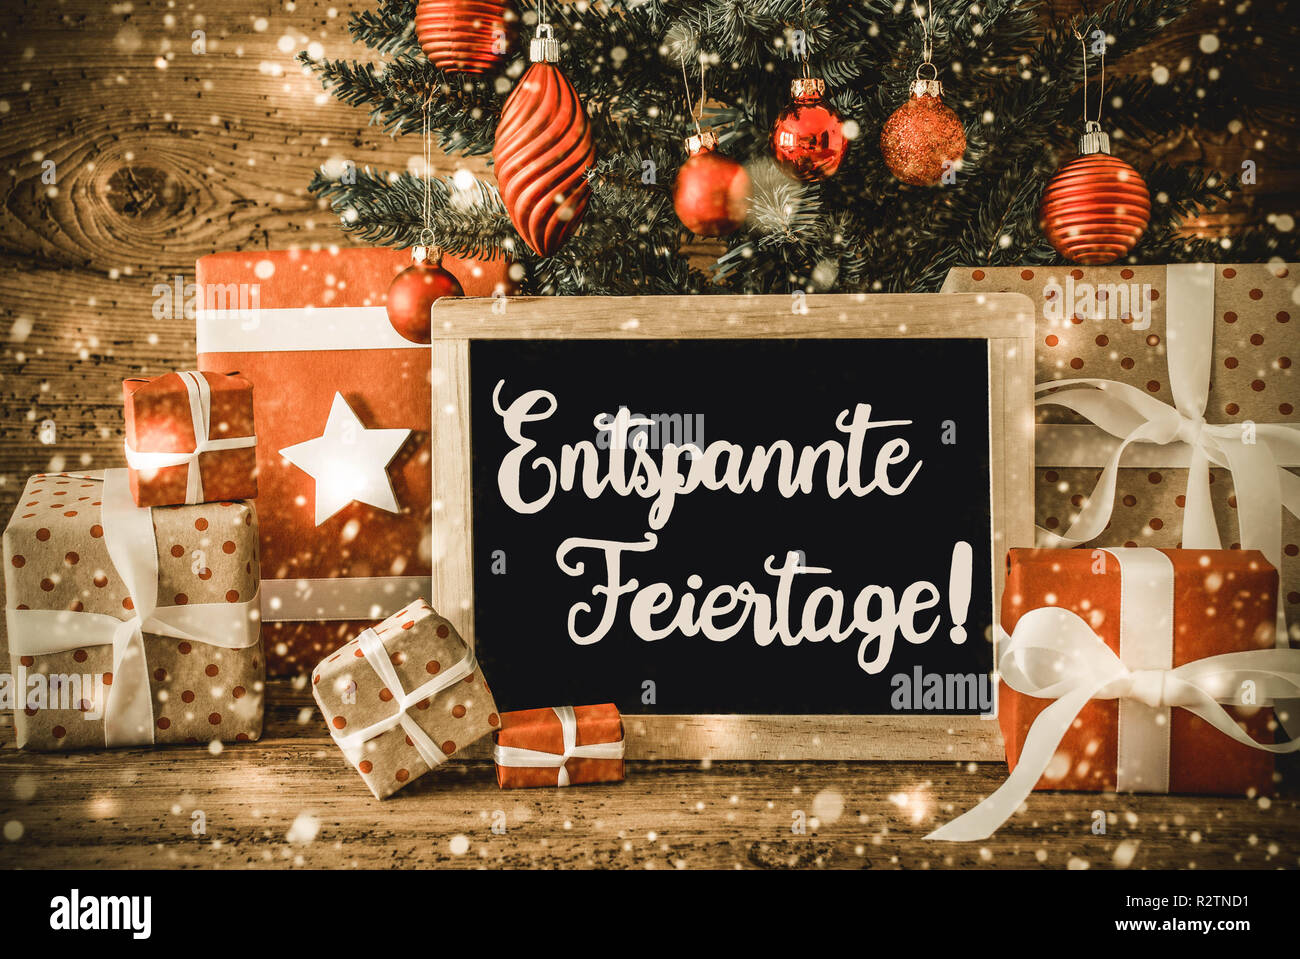 Árbol, regalos, Caligrafía Entspannte Feiertage significa ¡Feliz Navidad! Foto de stock